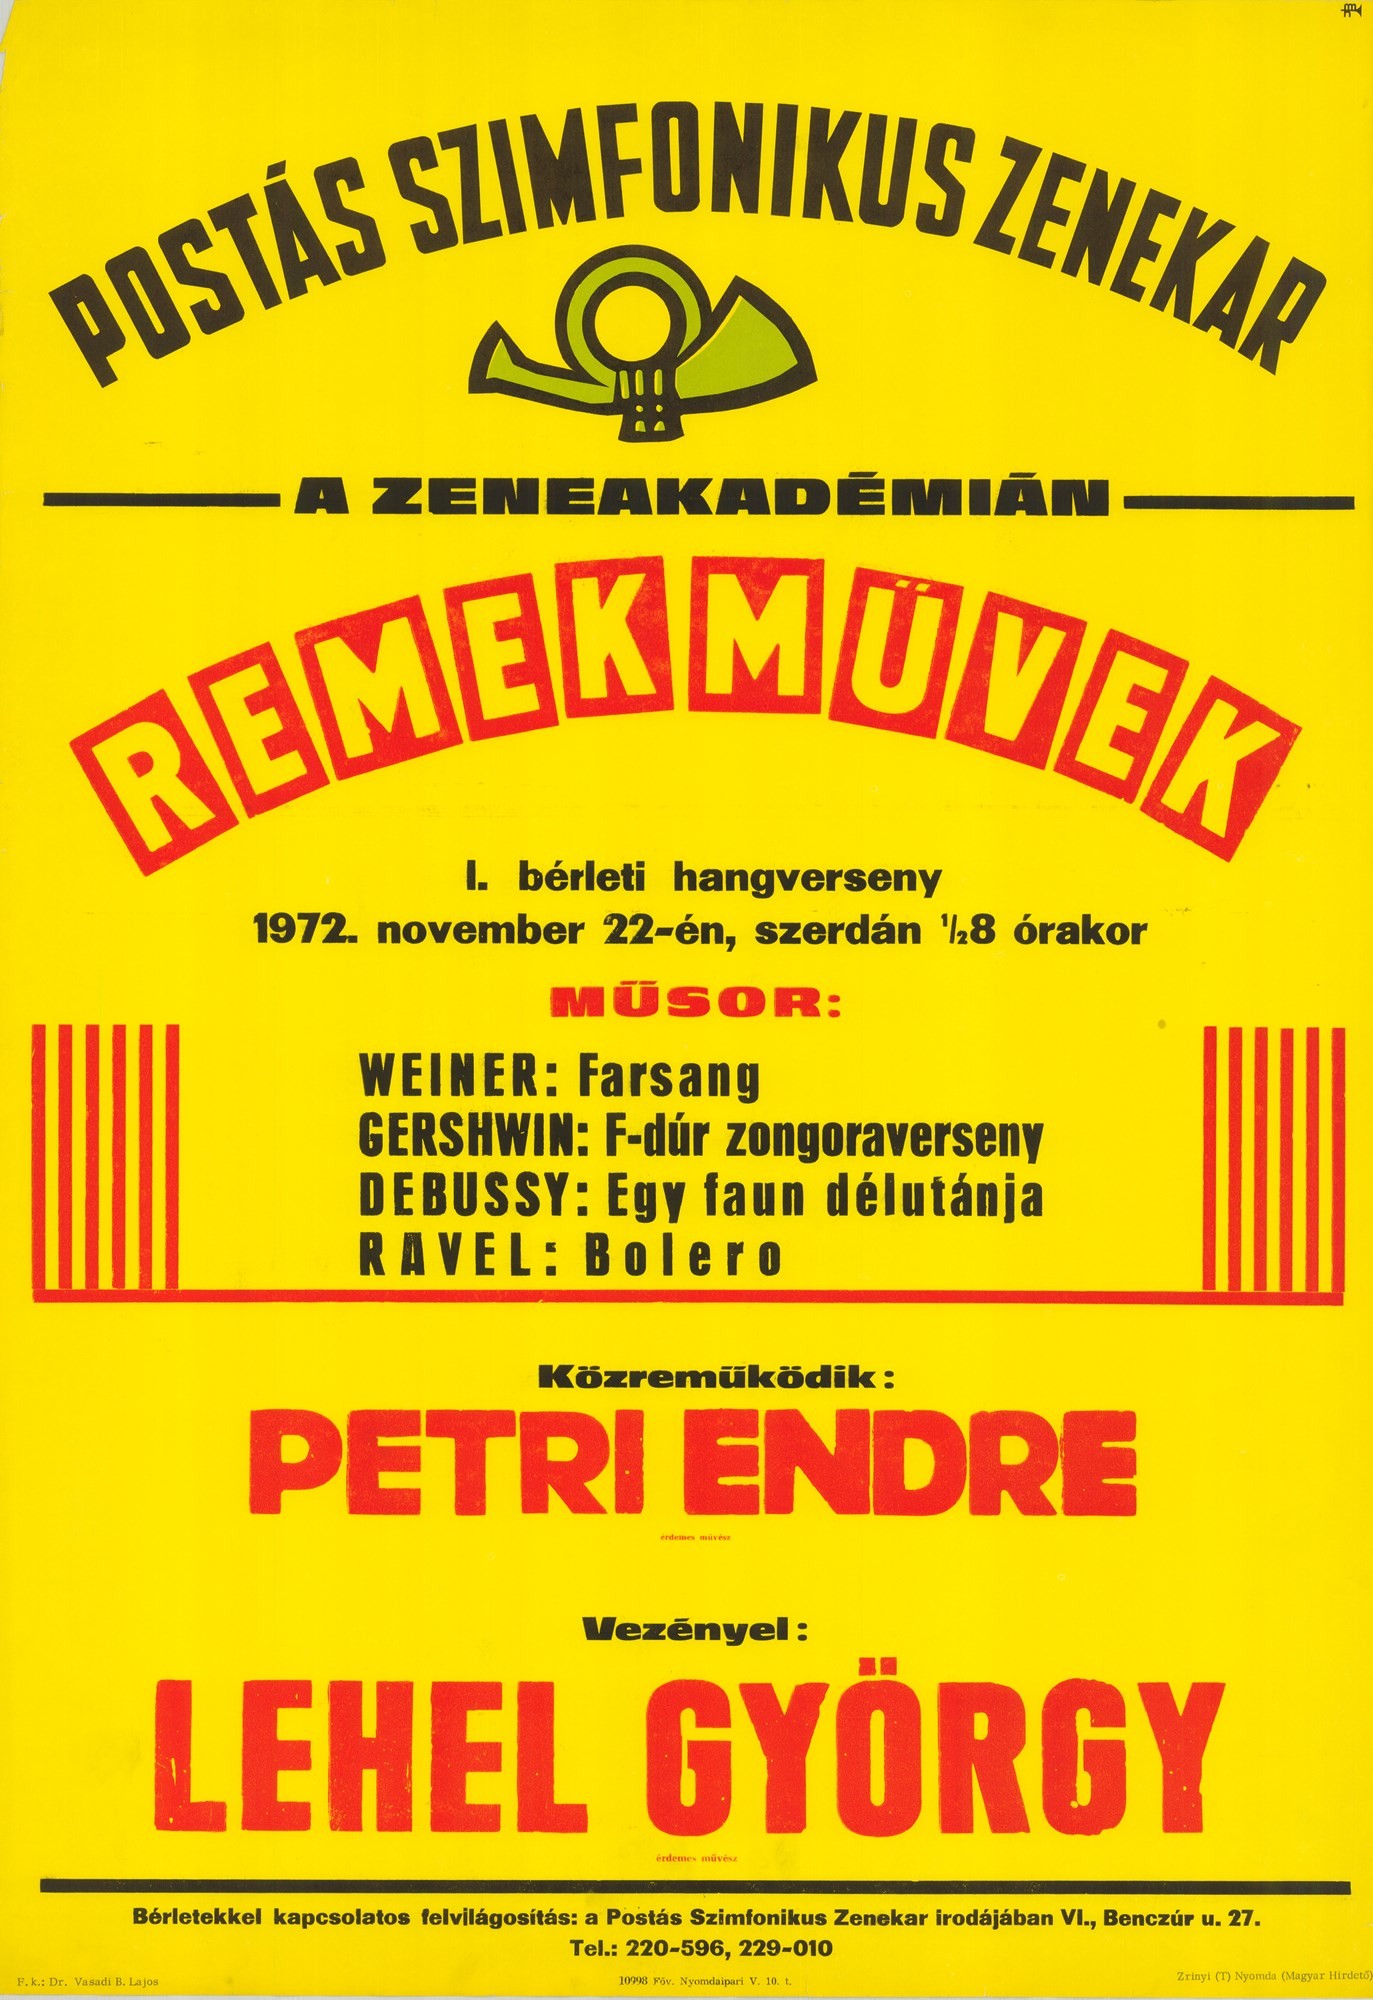 Plakát - Postás Szimfonikus Zenekar a Zeneakadémián, 1972 (Postamúzeum CC BY-NC-SA)